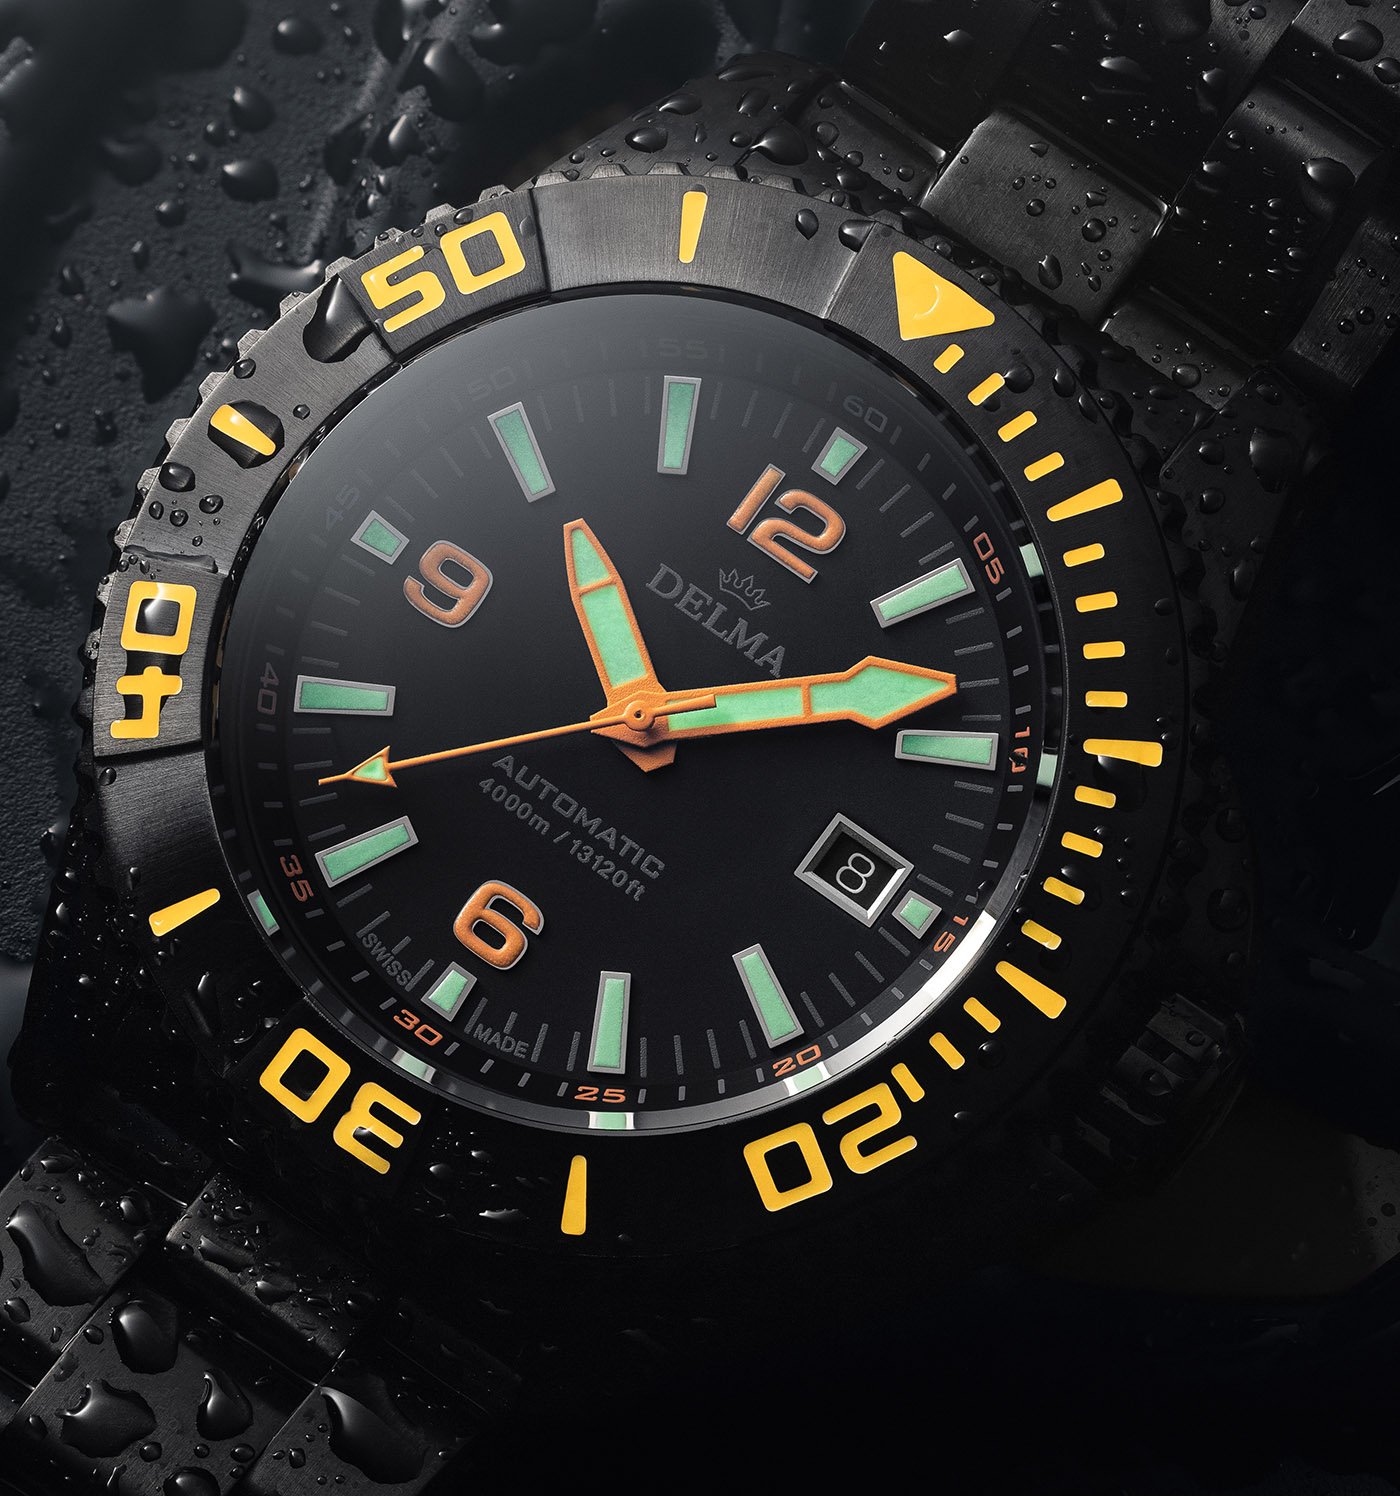 Delma представляет часы ограниченной серии Blue Shark III Black Edition